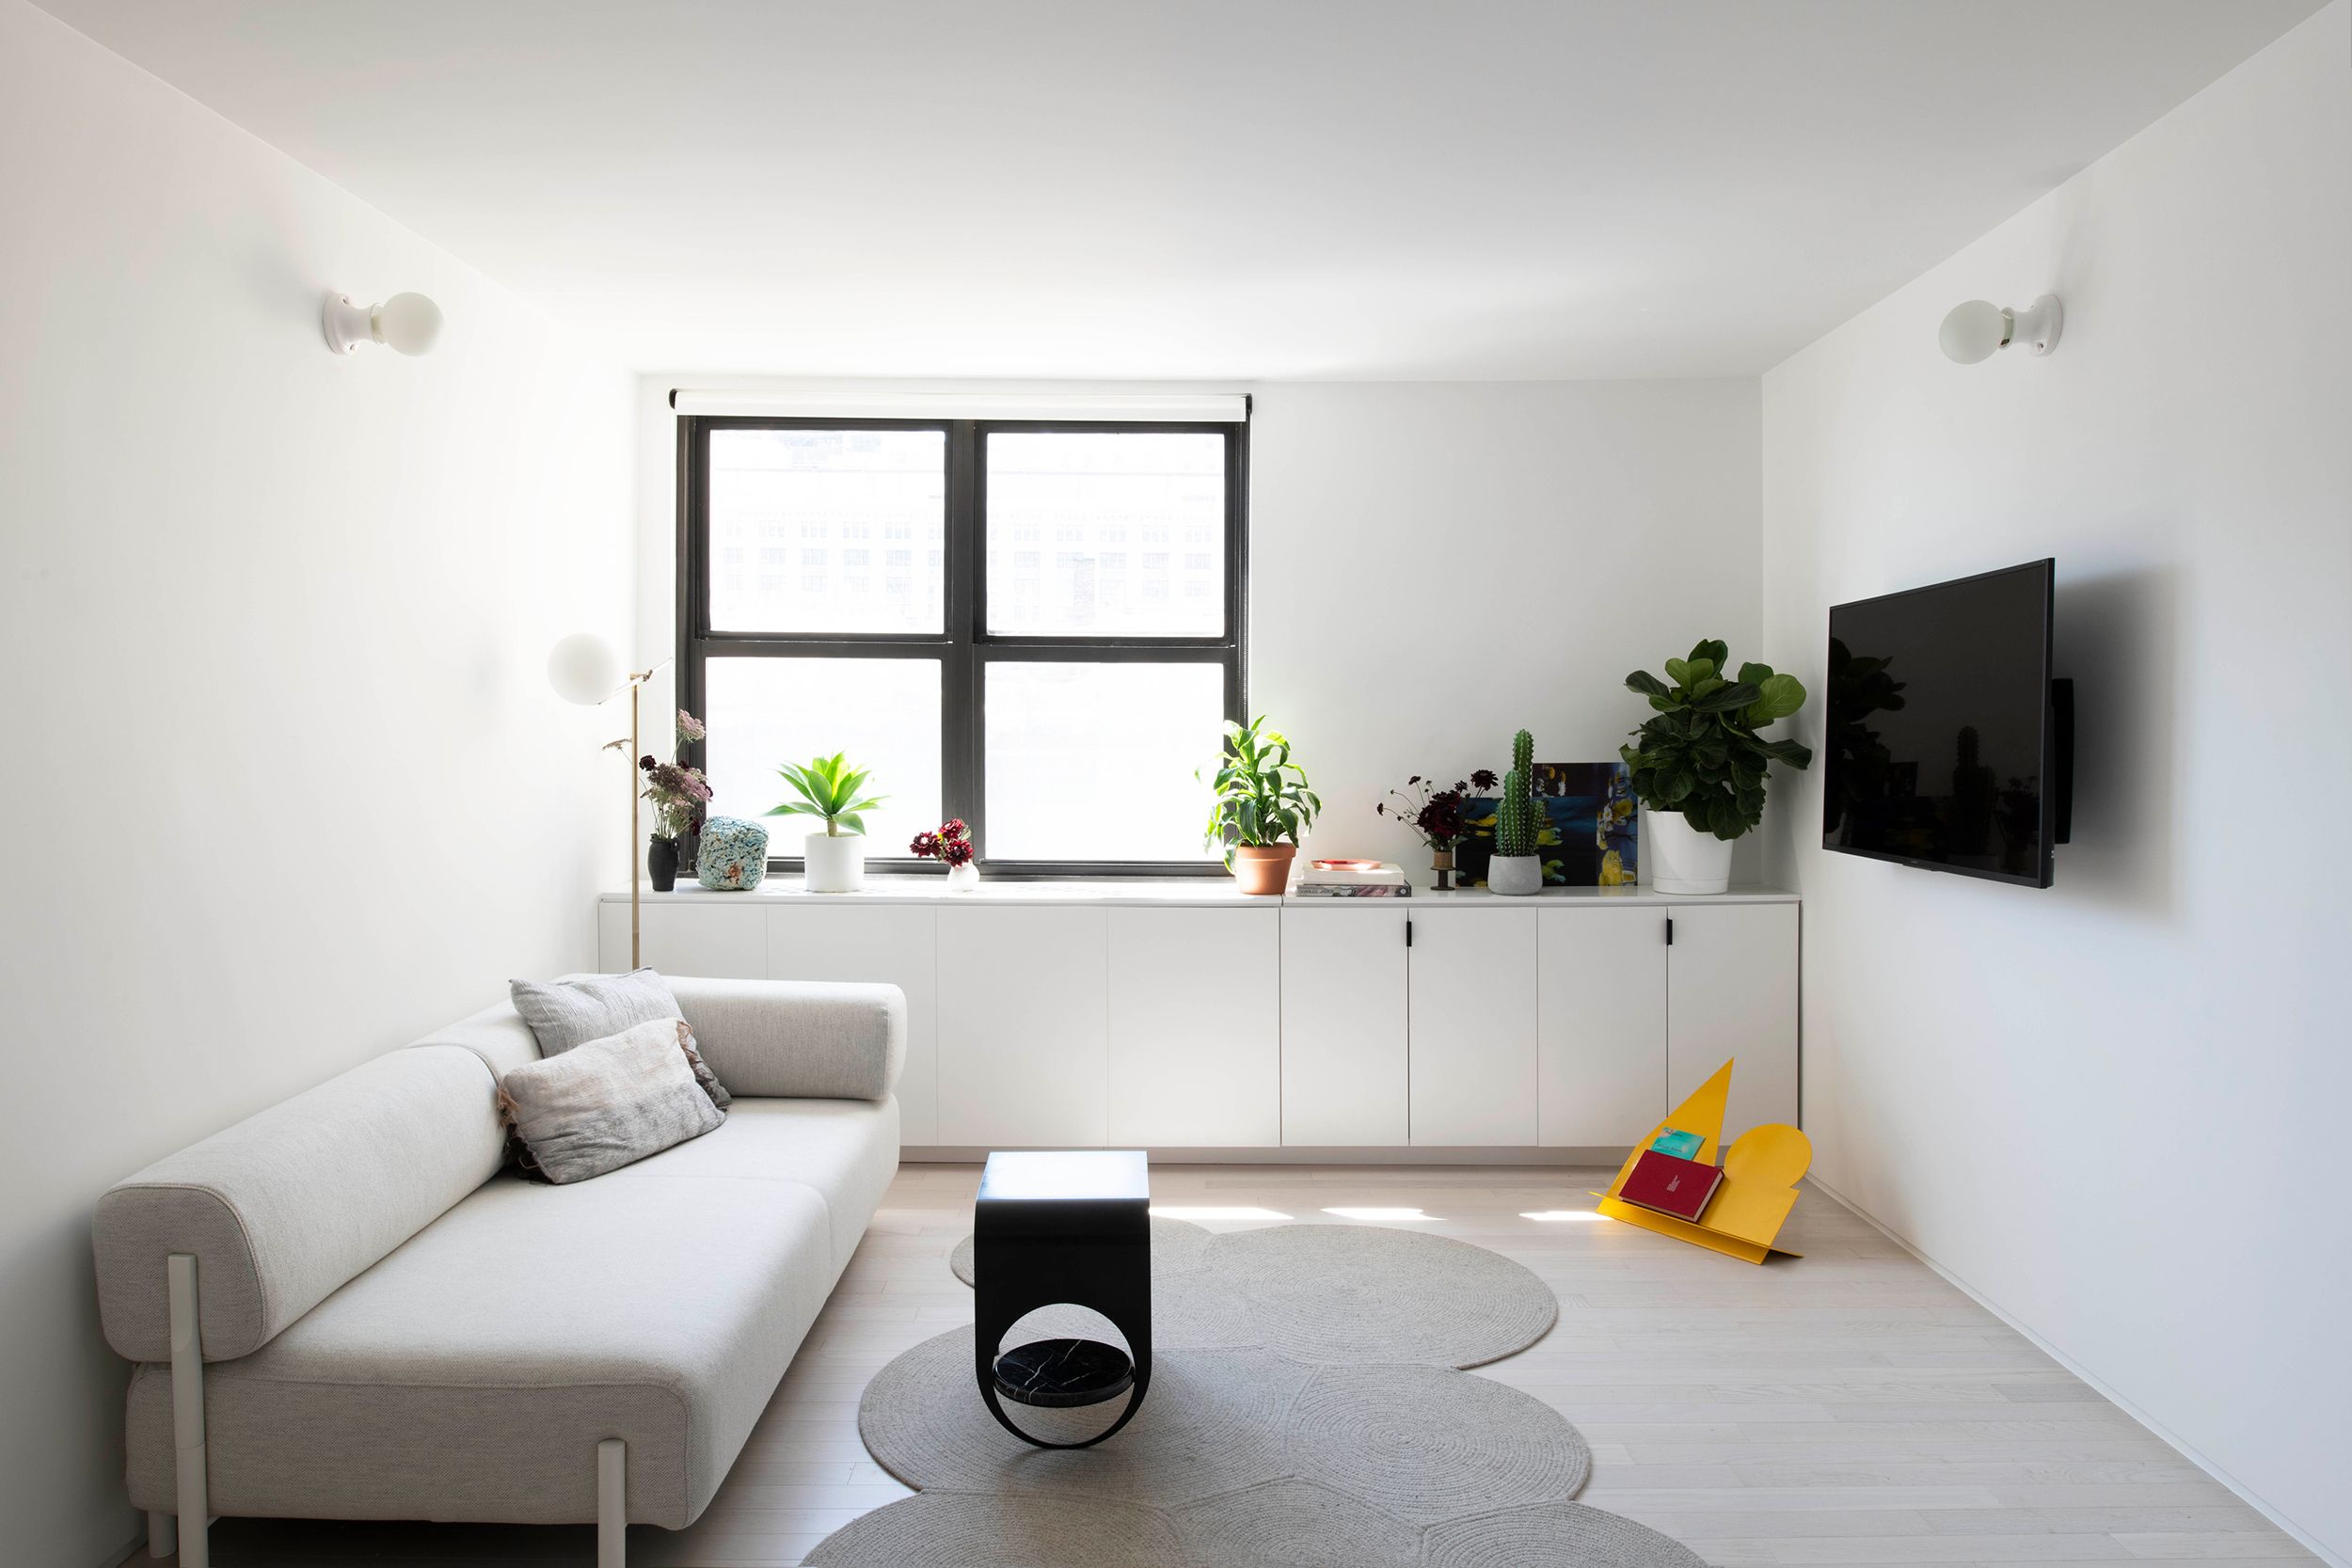 Un moderno y minimalista apartamento decorado en blanco